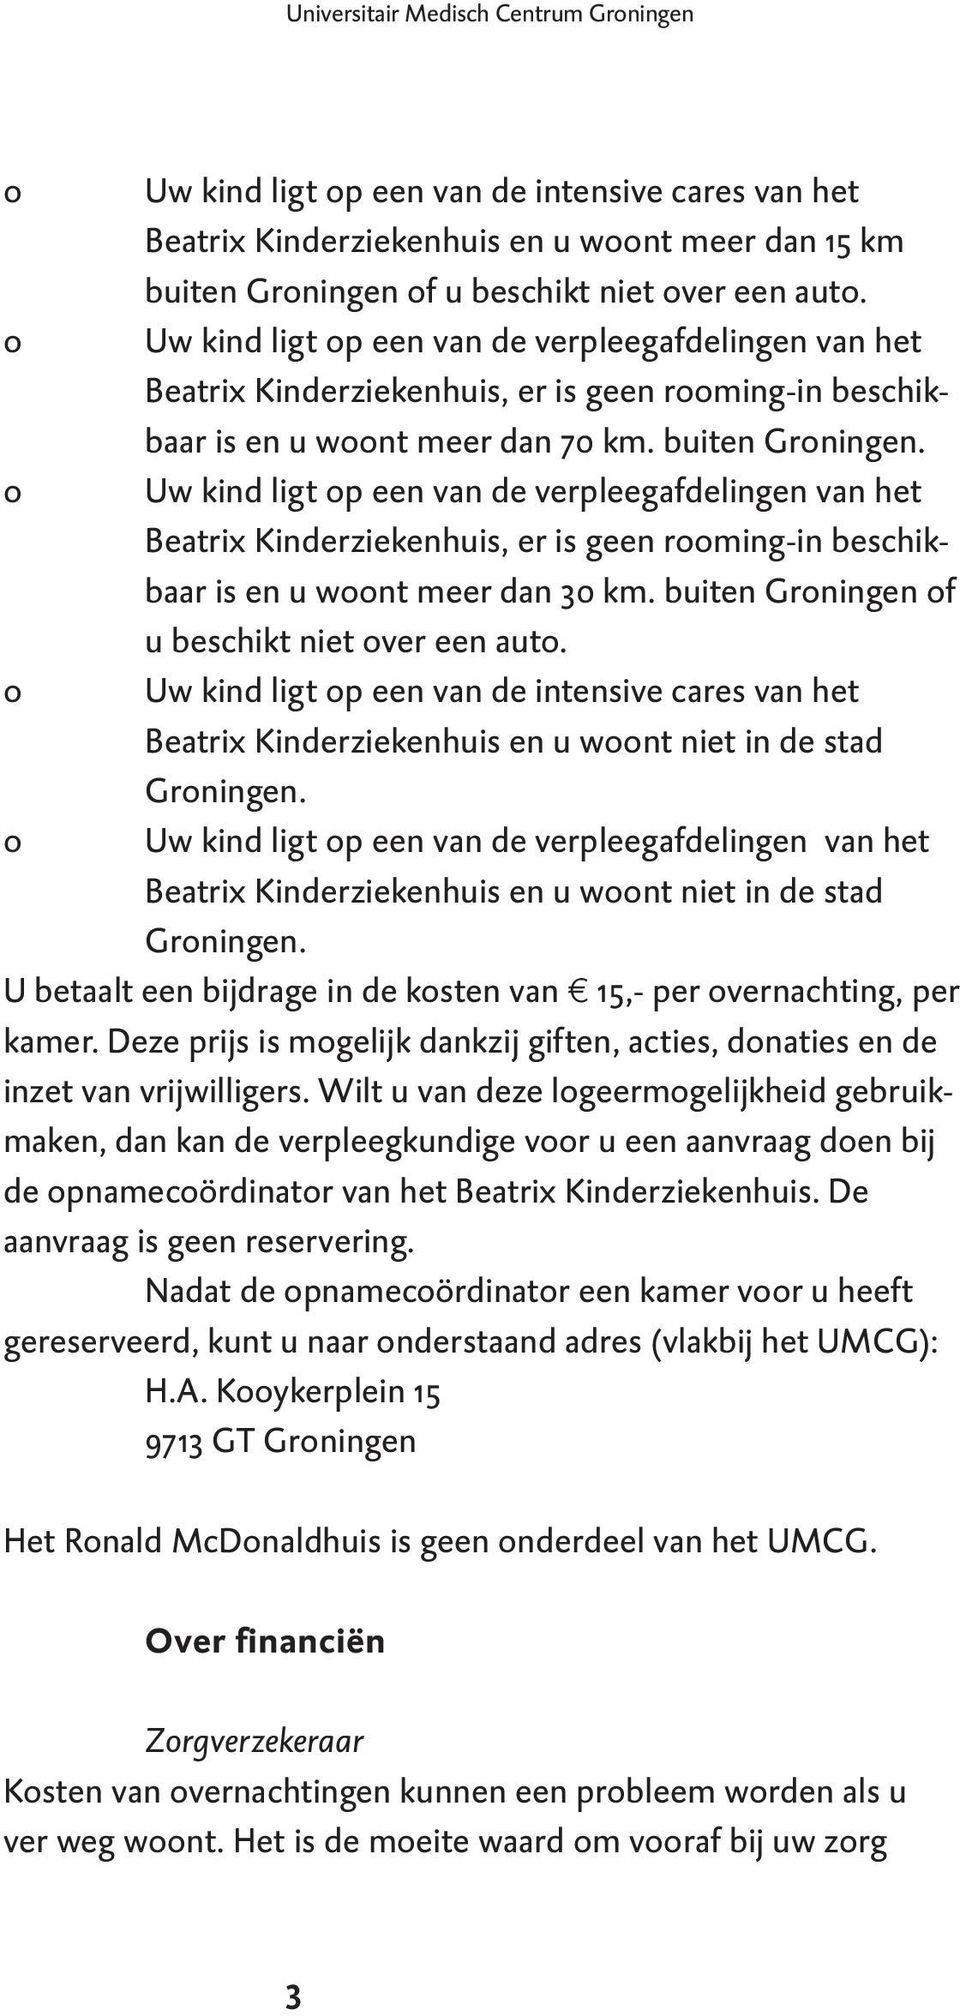 o Uw kind ligt op een van de verpleegafdelingen van het Beatrix Kinderziekenhuis, er is geen rooming-in beschikbaar is en u woont meer dan 30 km. buiten Groningen of u beschikt niet over een auto.